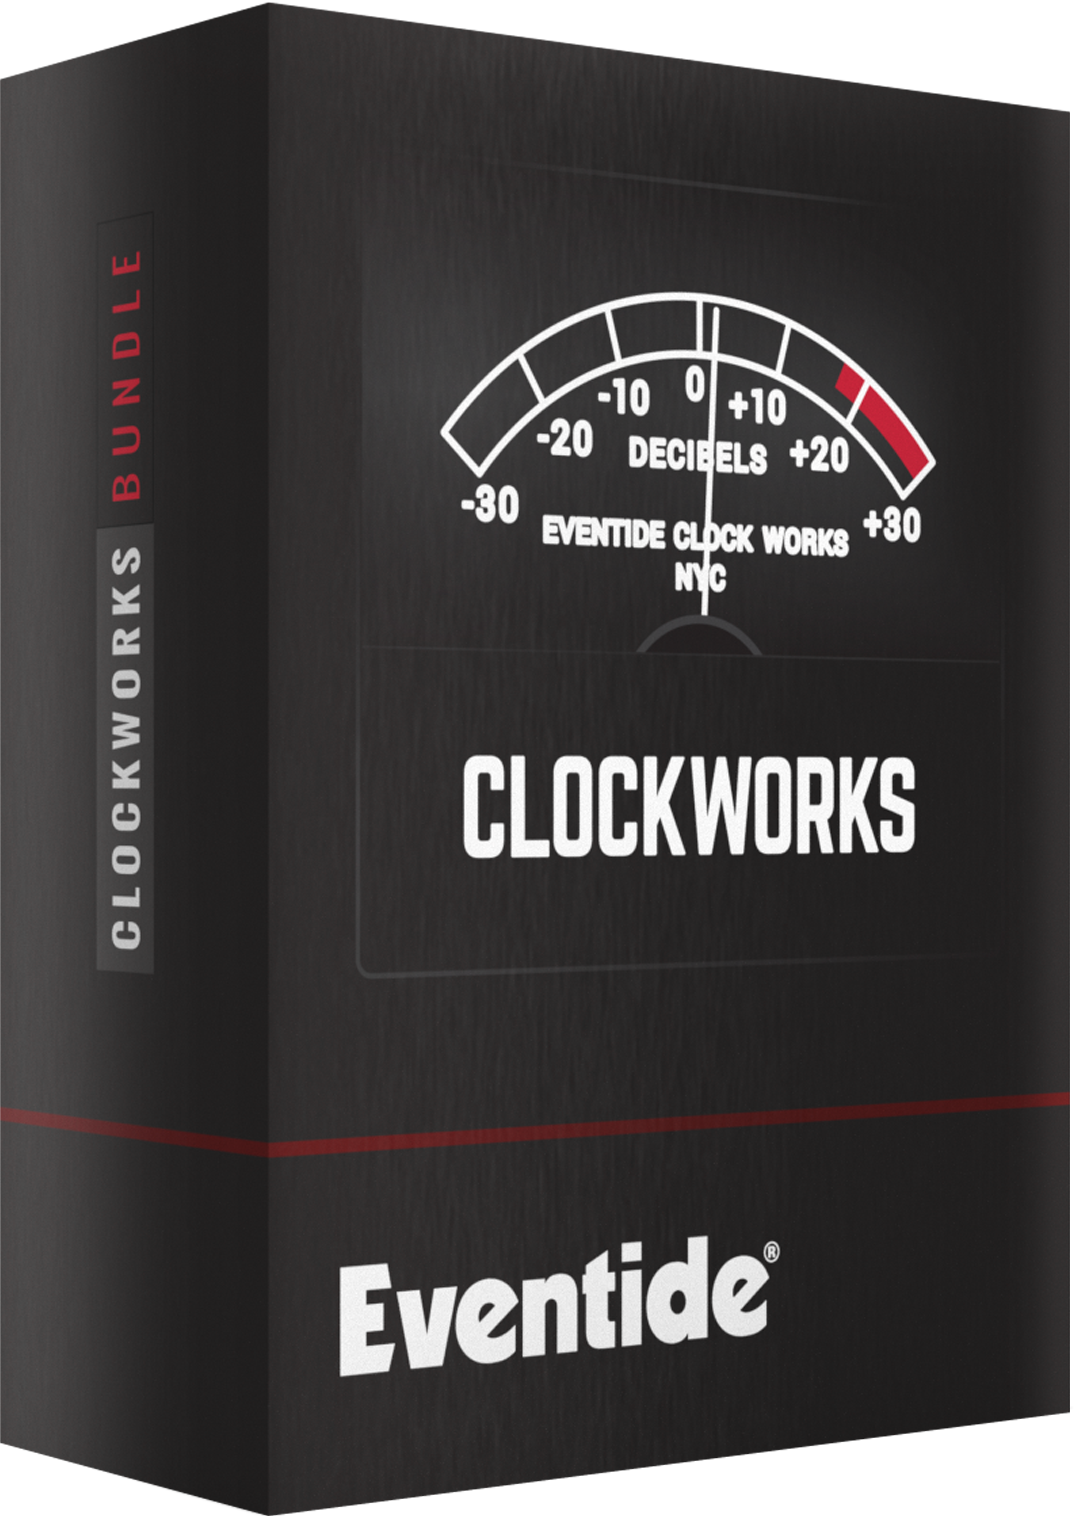 Eventide Clockworks bundle